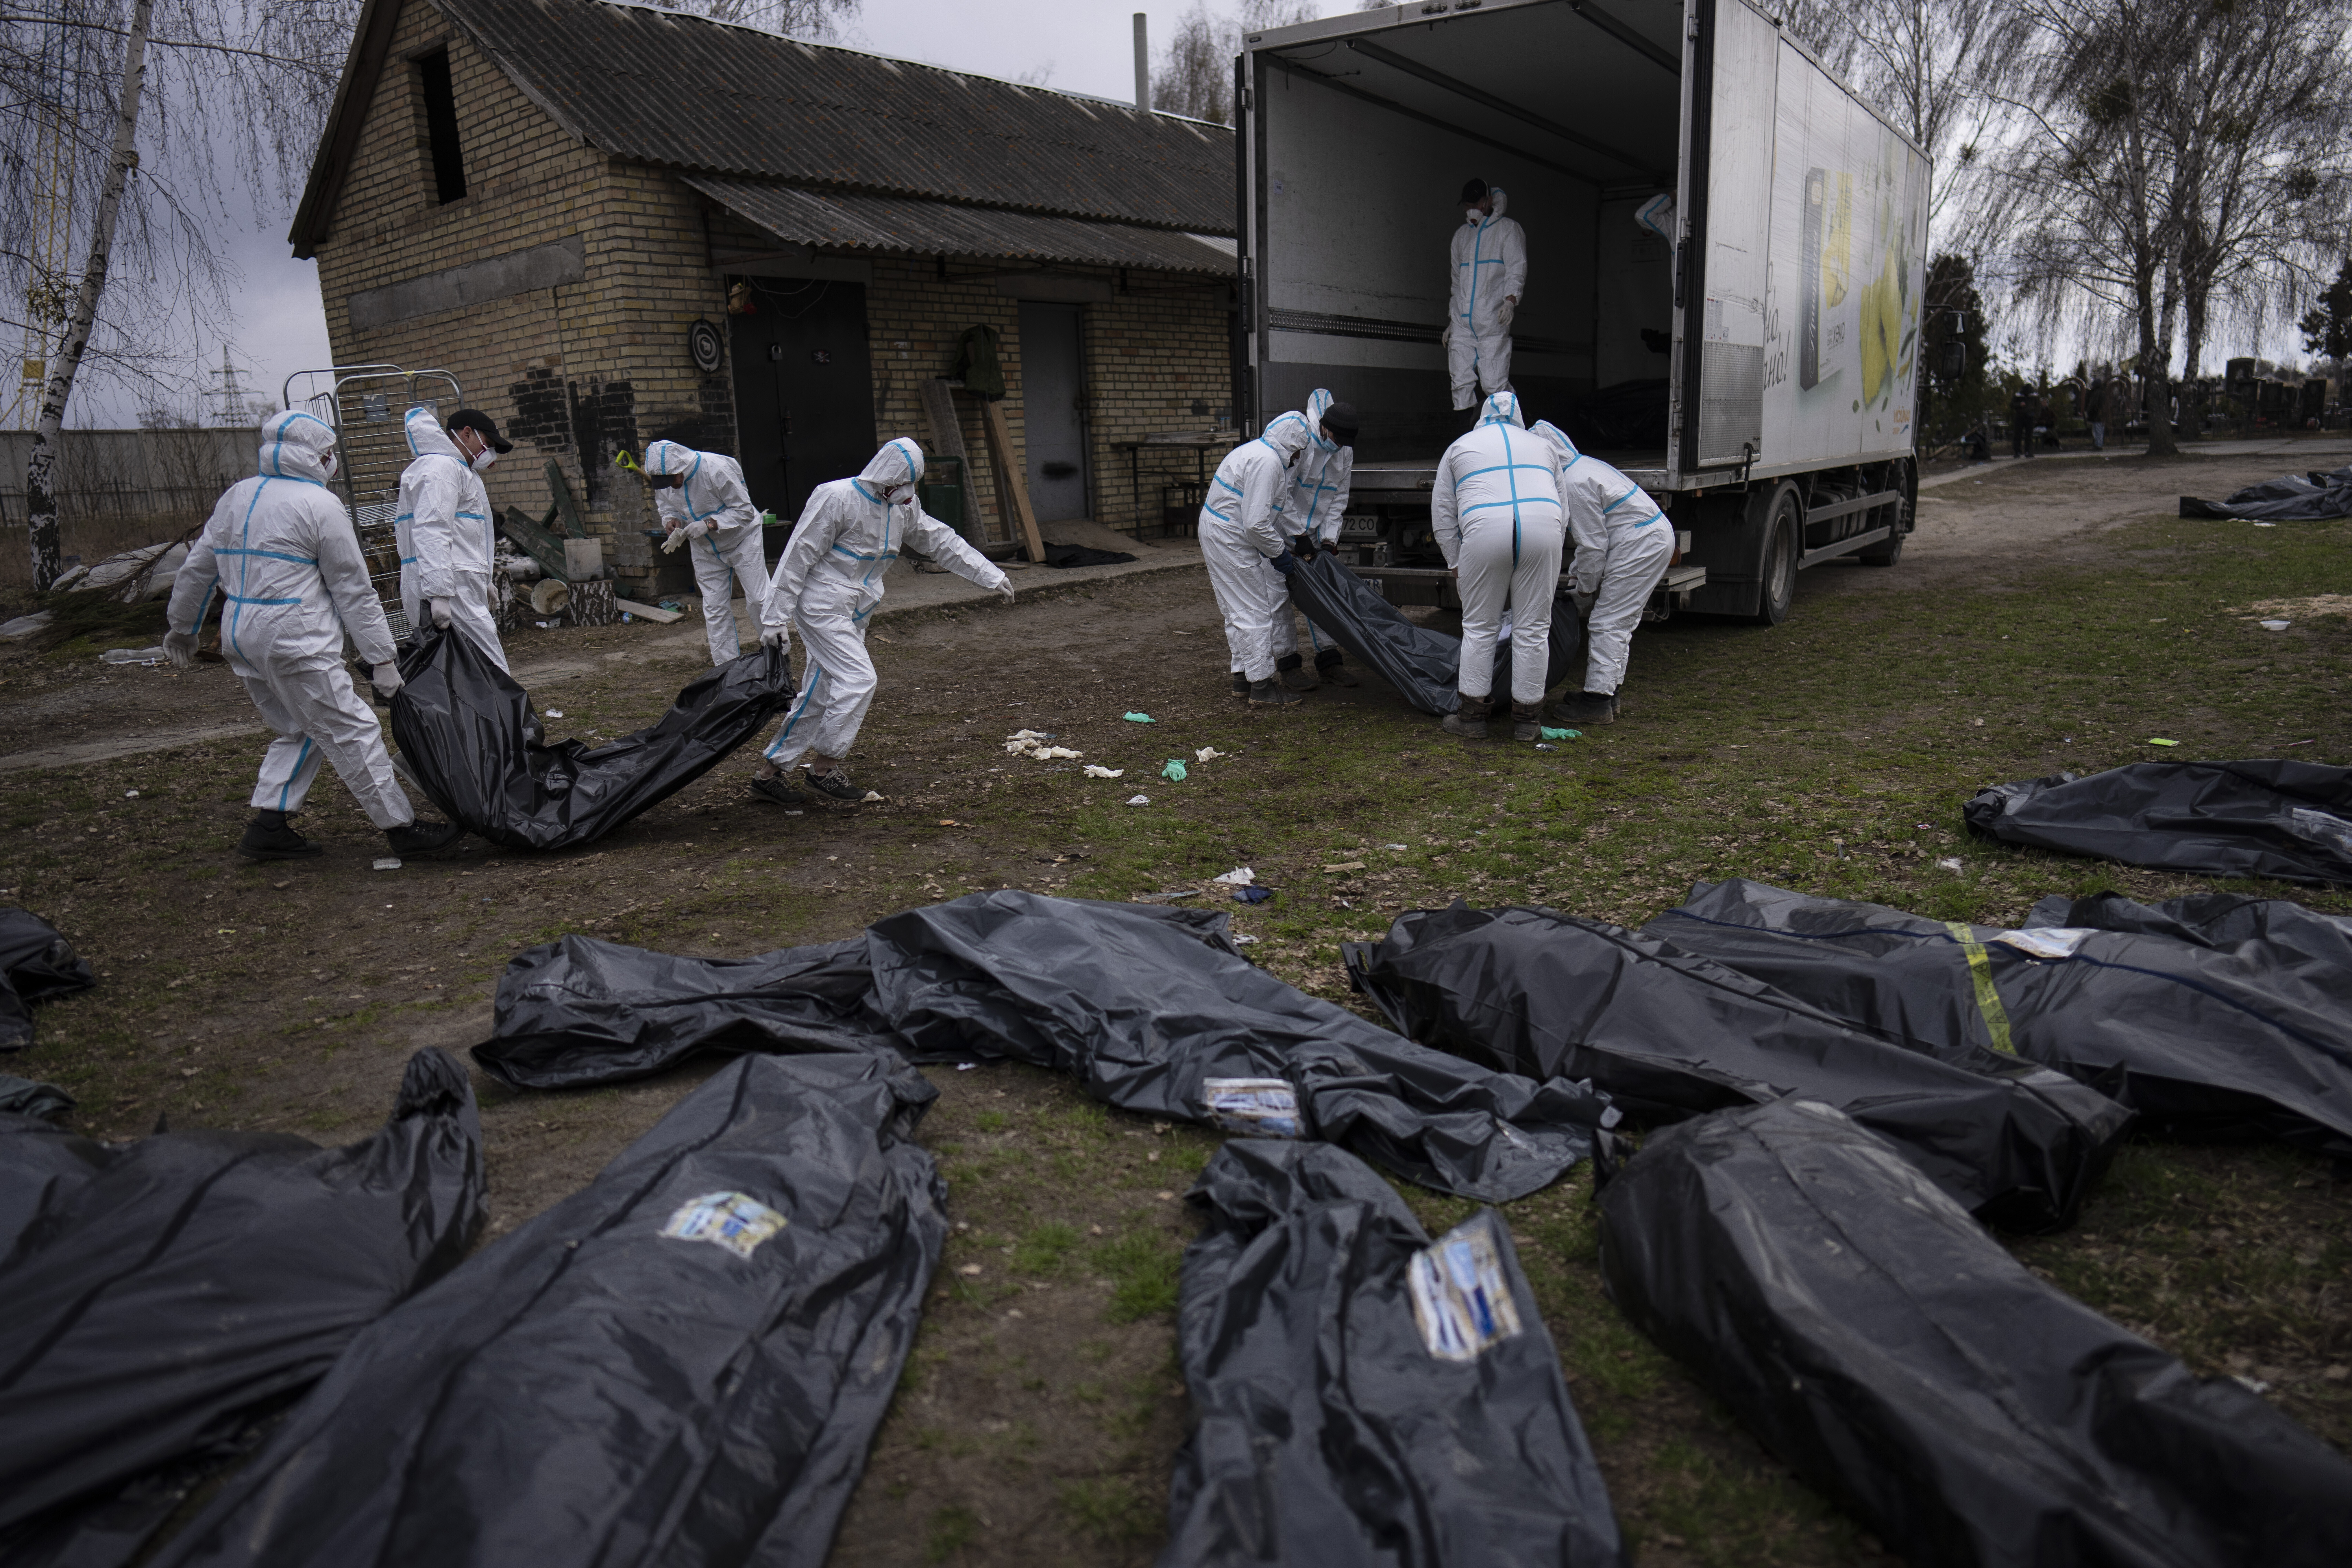 ARCHIVO - Voluntarios cargan cuerpos de civiles asesinados en Bucha en un camión para ser llevados a una morgue para su investigación, en las afueras de Kyiv, Ucrania, el martes 12 de abril de 2022. (Foto AP/Rodrigo Abd, Archivo)

